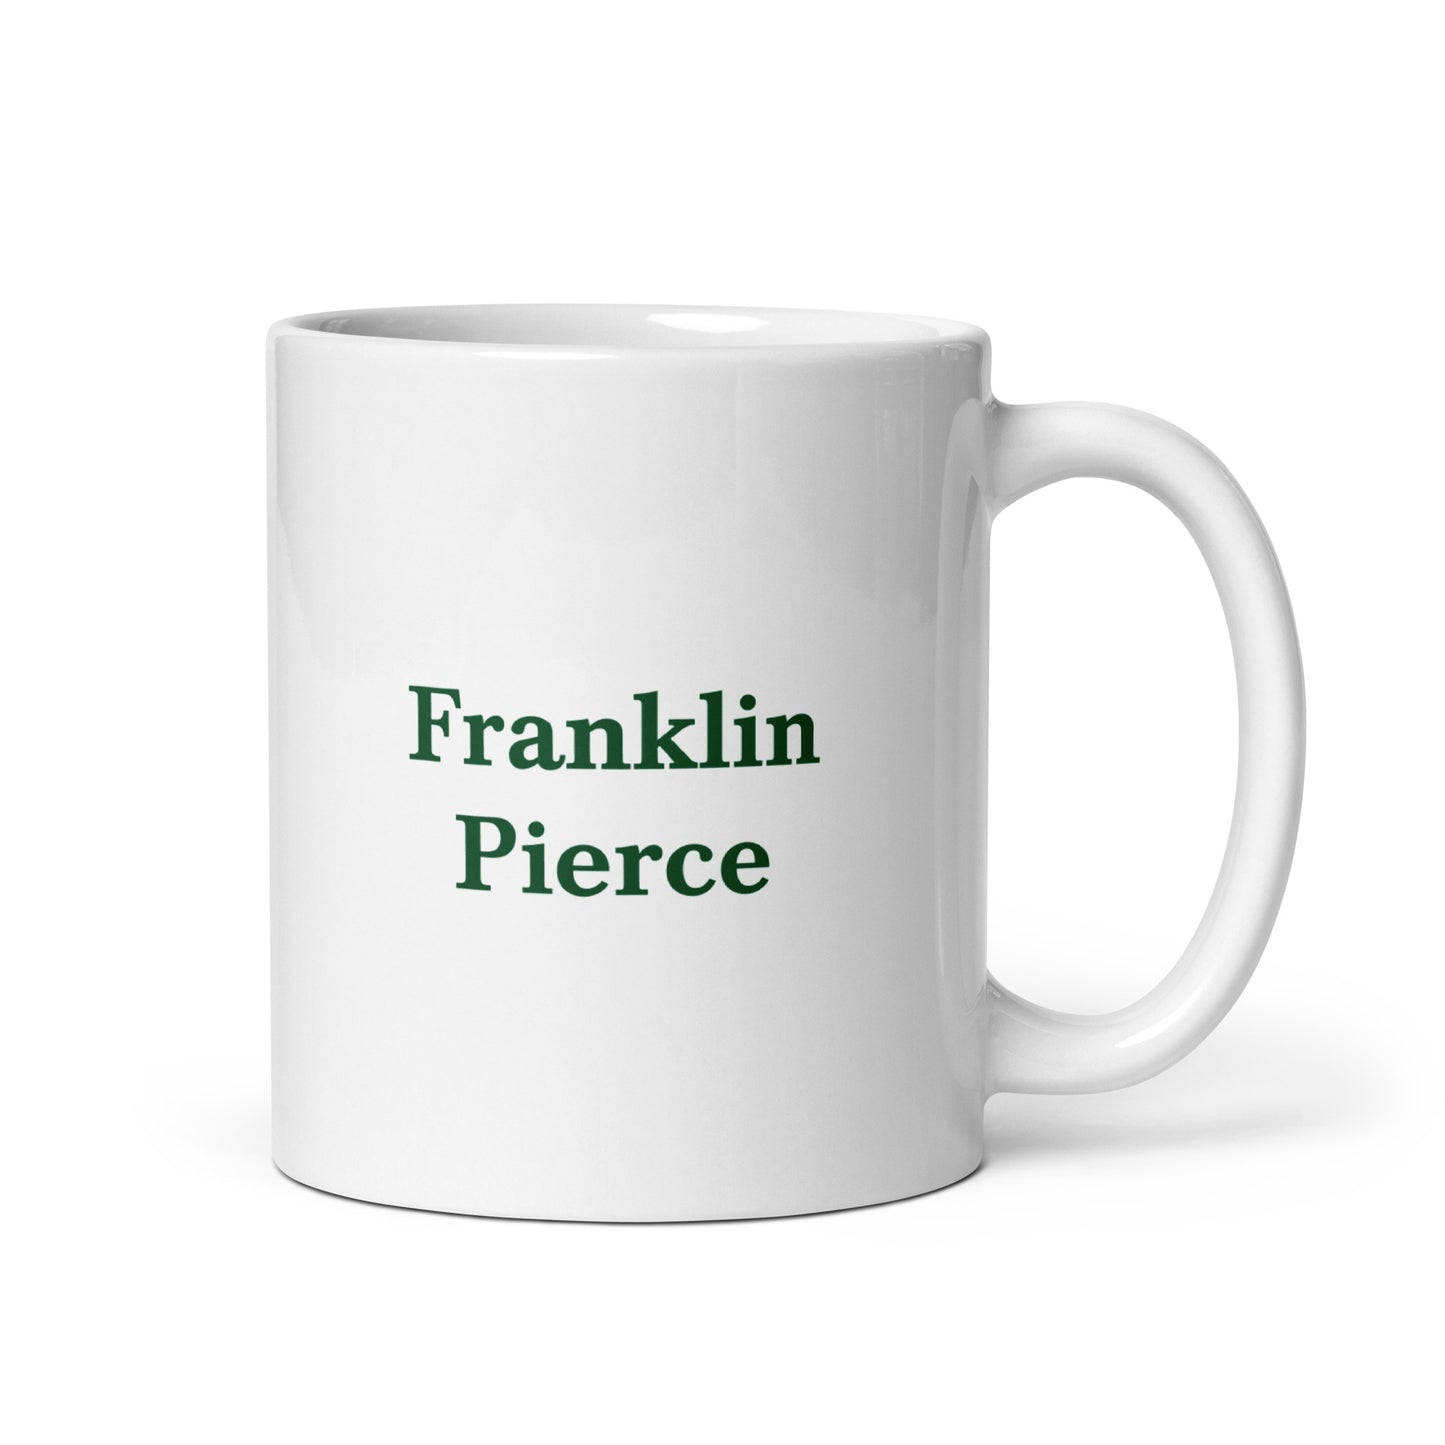 Franklin Pierce white glossy mug